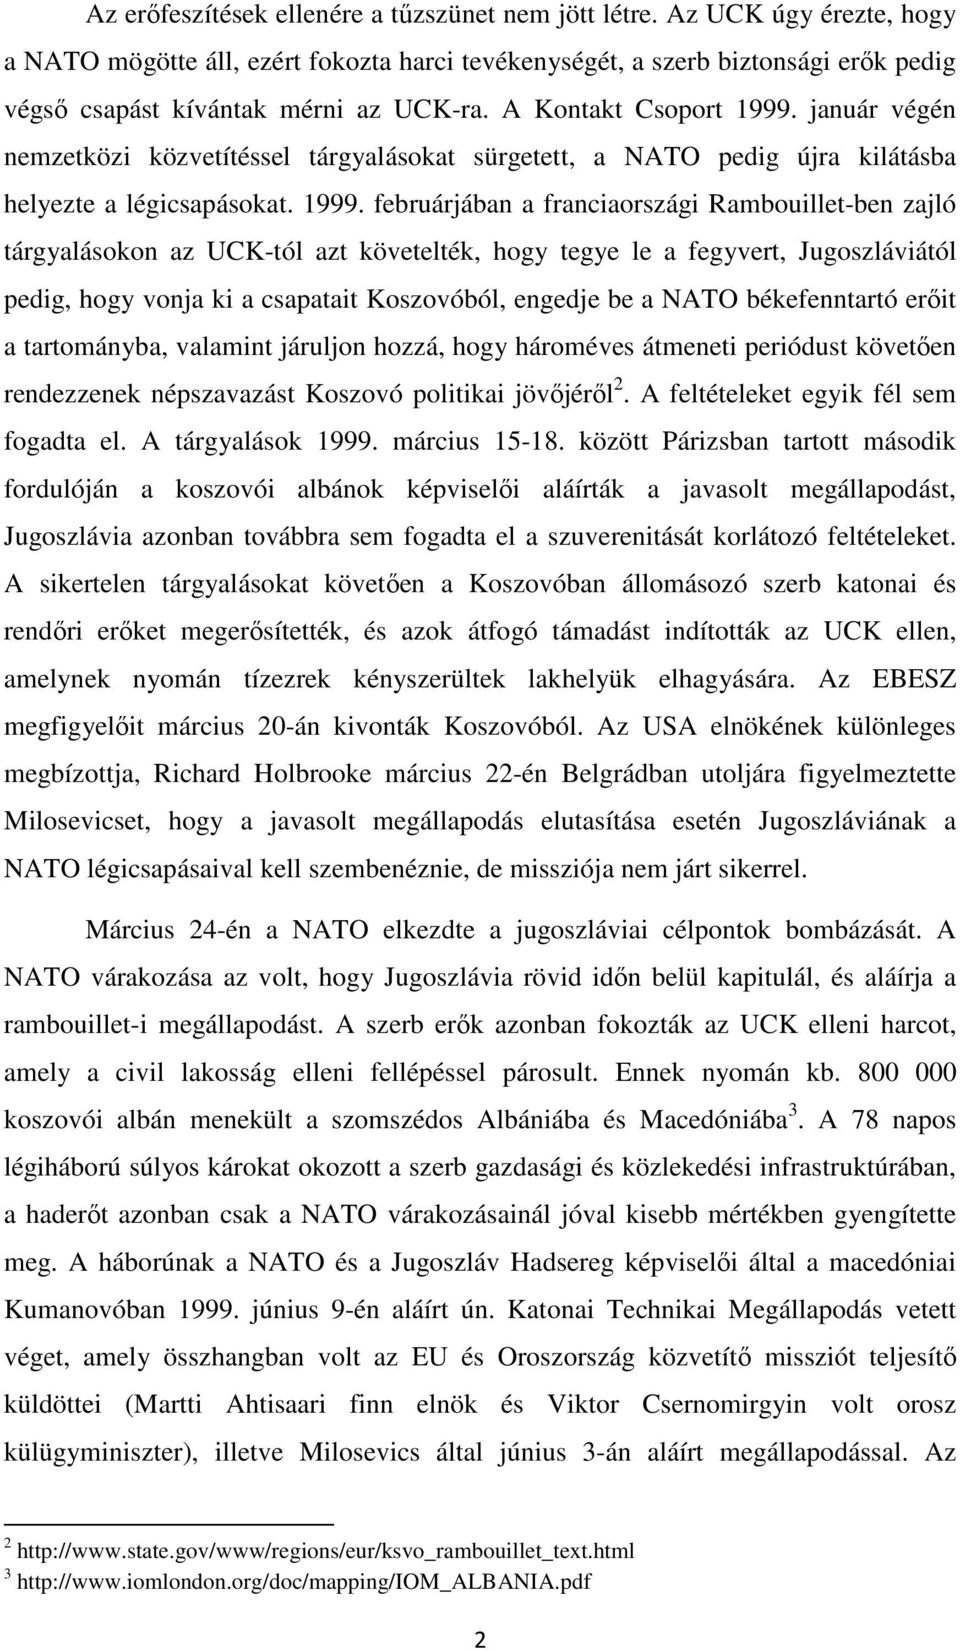 január végén nemzetközi közvetítéssel tárgyalásokat sürgetett, a NATO pedig újra kilátásba helyezte a légicsapásokat. 1999.